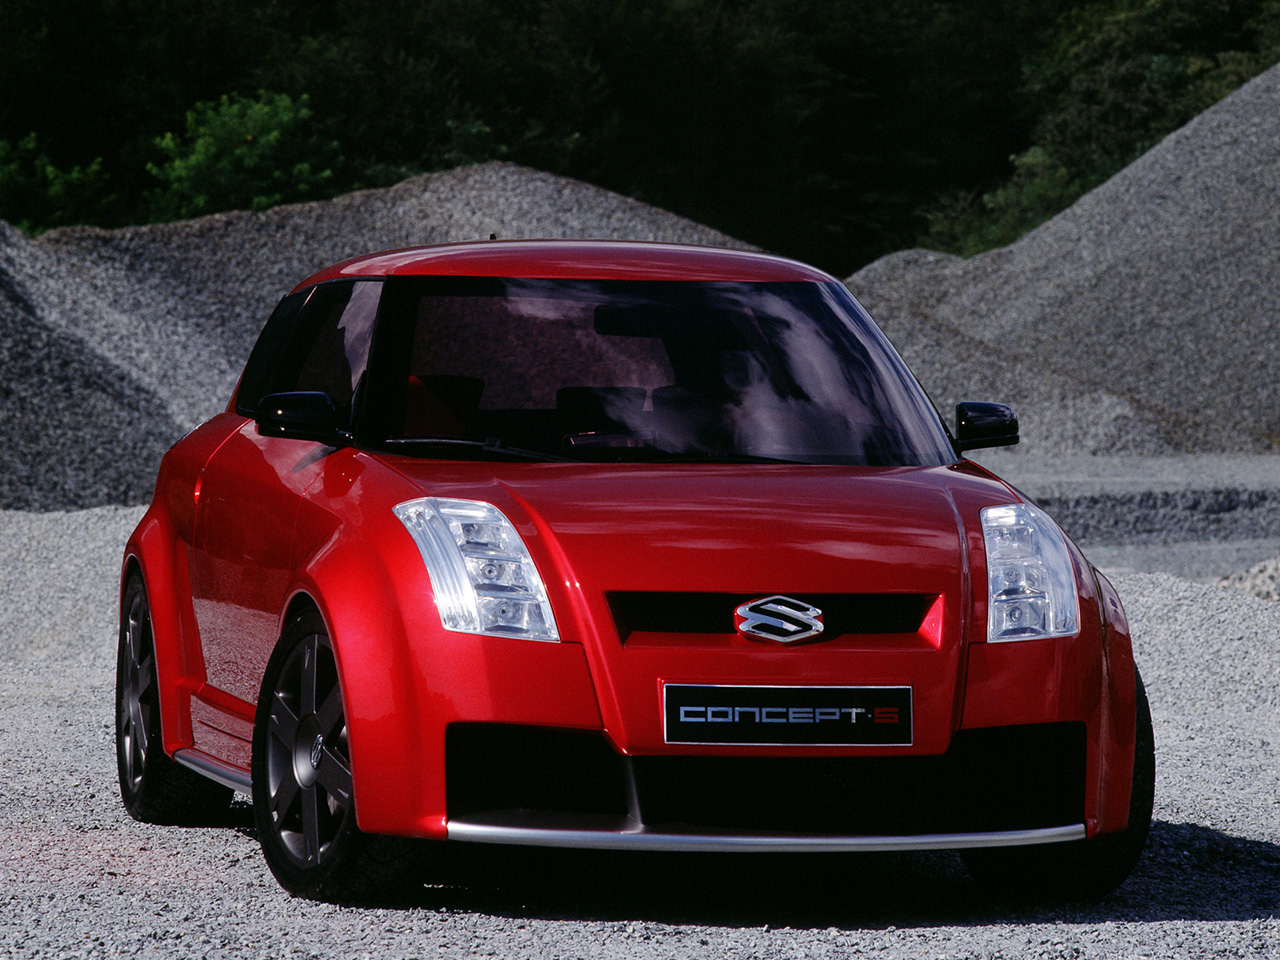 Suzuki Concept S, 2002